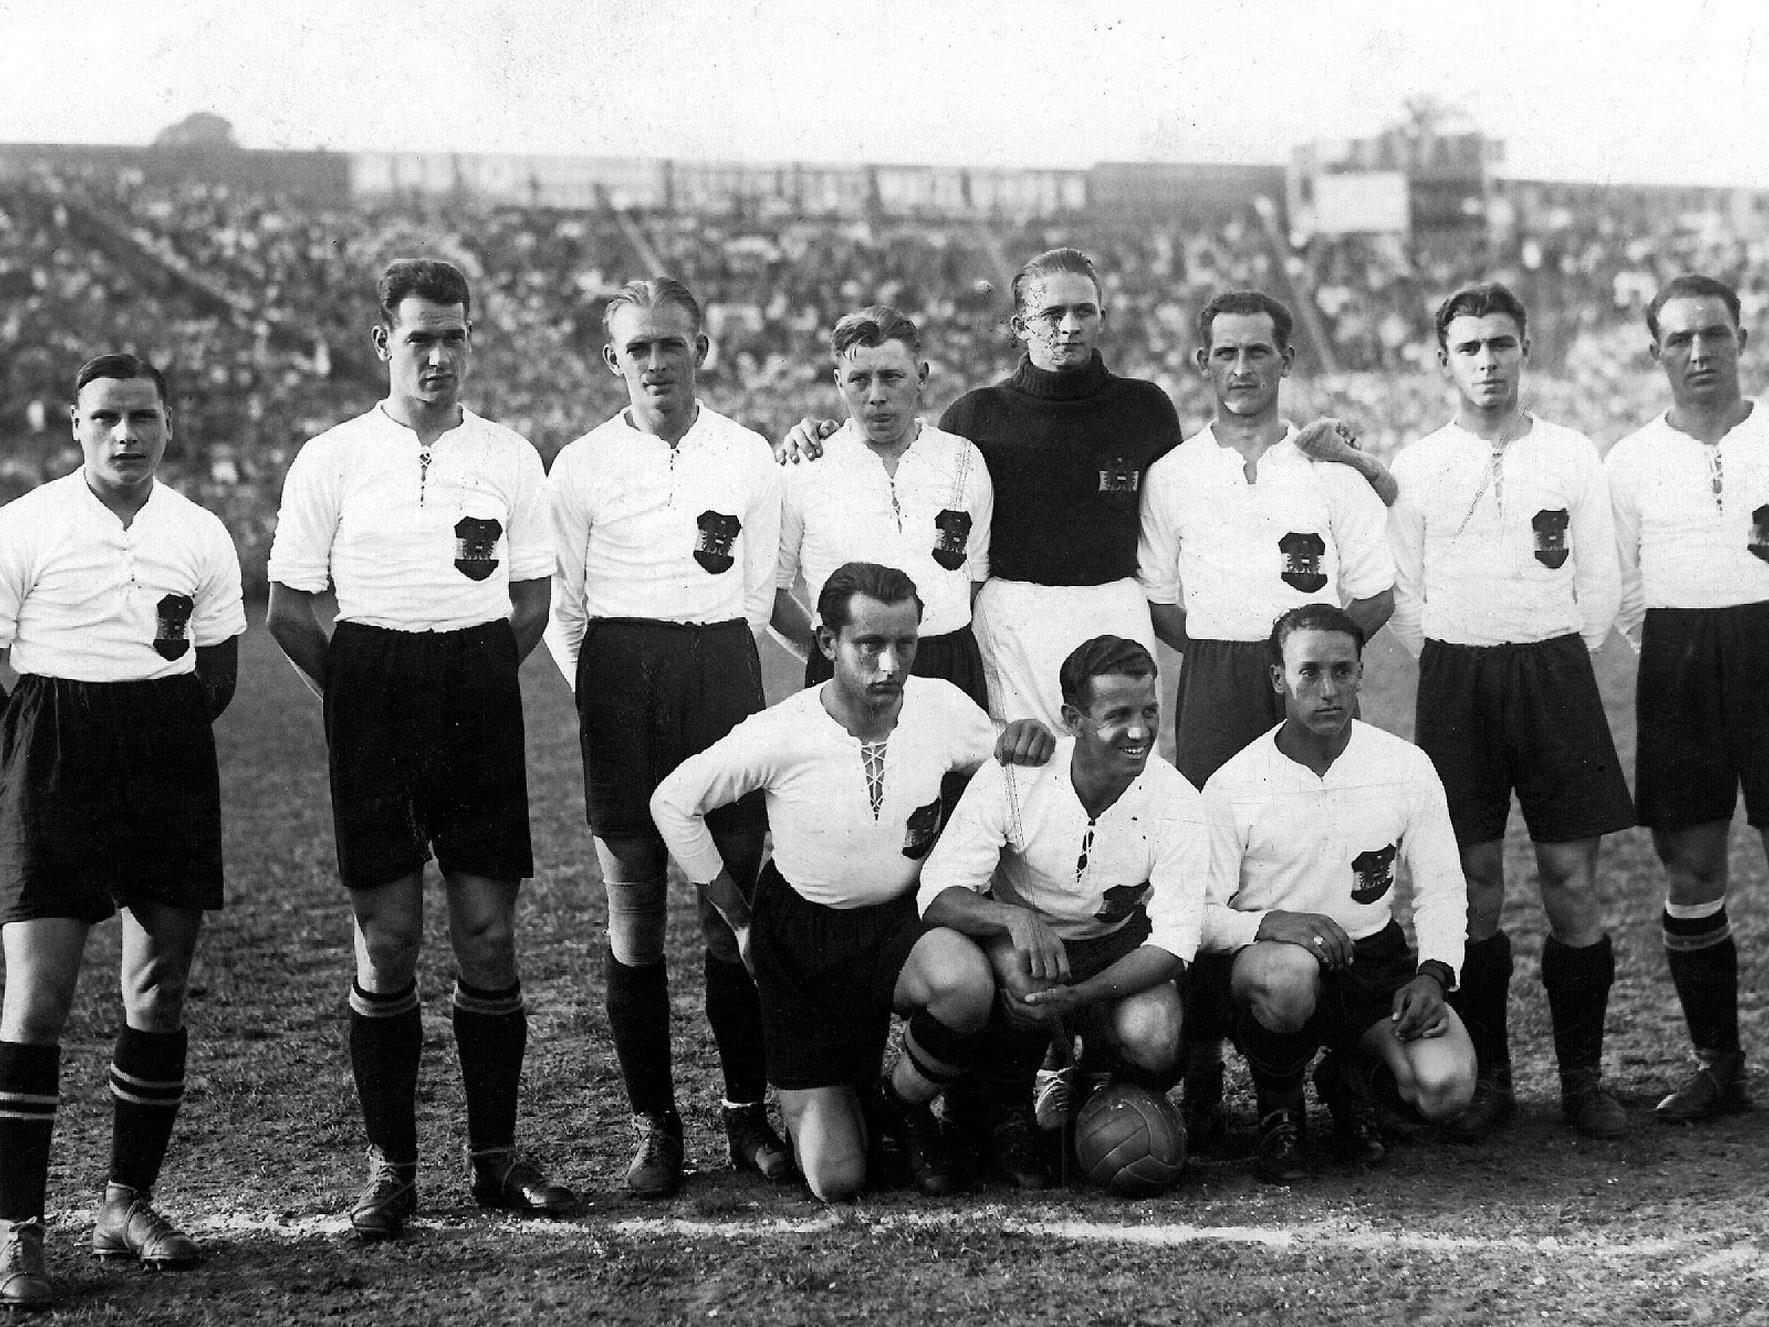 Das "Wunderteam" mit Matthias Sindelar (stehend, dritter von links) vor dem 5:0 gegen Schottland in Wien 1931.